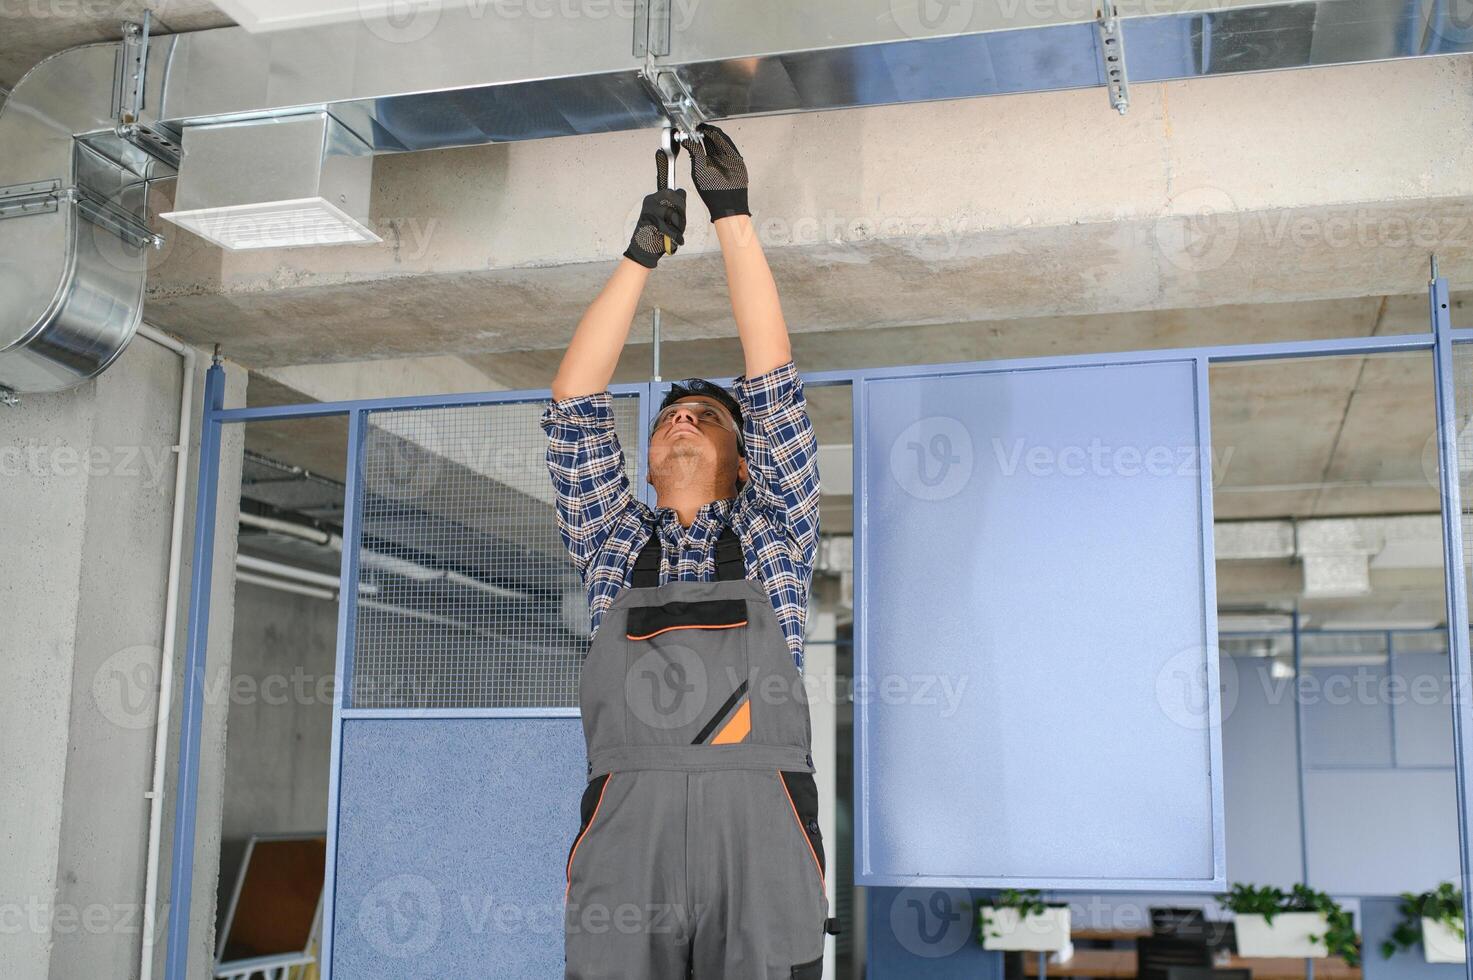 hvac indiano trabalhador instalar canalizado tubo sistema para ventilação e ar condicionamento. cópia de espaço foto